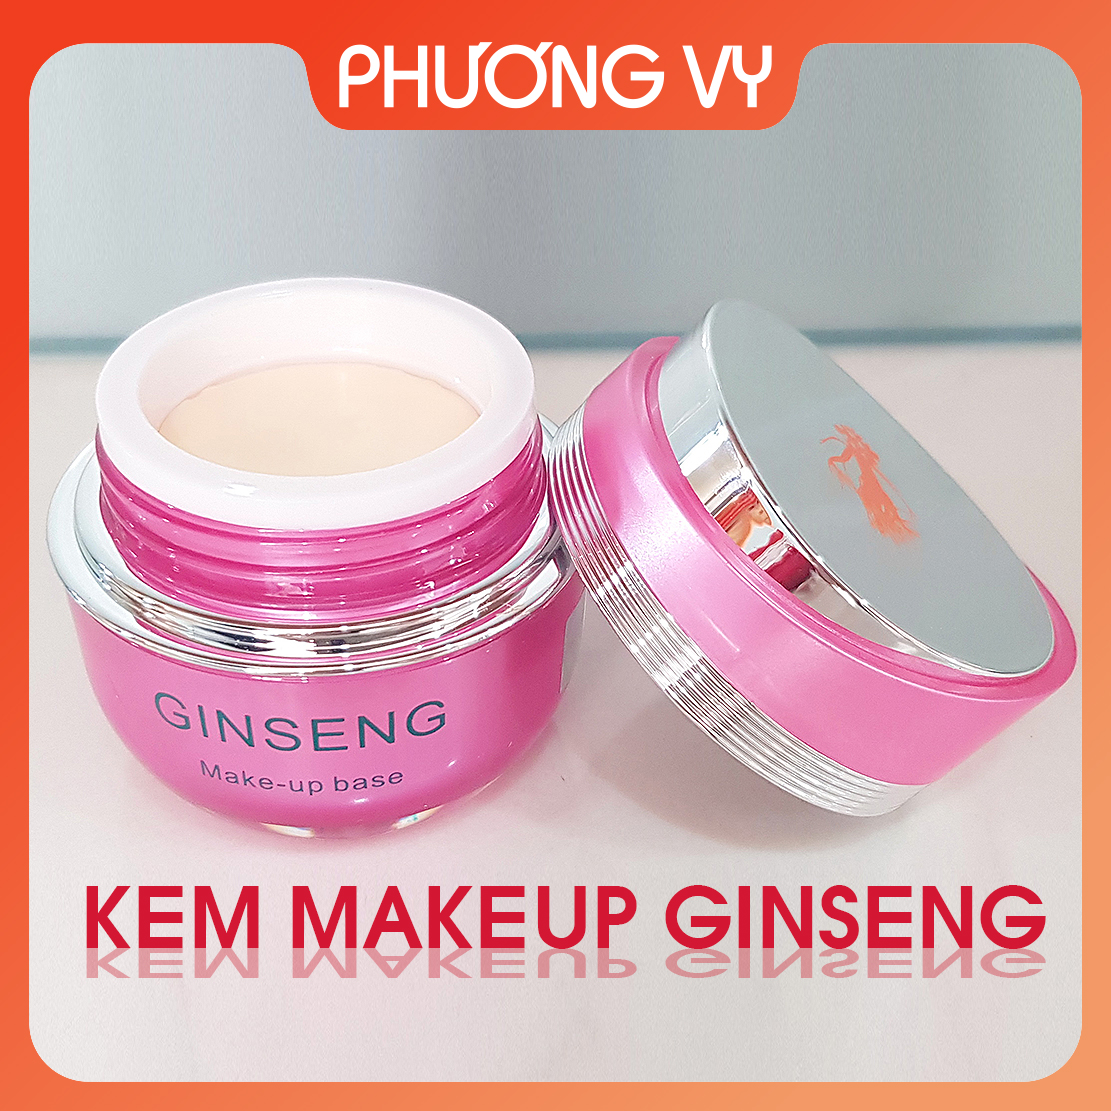 [CHÍNH HÃNG] Kem chống nắng Ginseng nhân sâm giúp chống nắng và dưỡng ẩm cho da kem nám Hàn Quốc mỹ phẩm Ginseng.